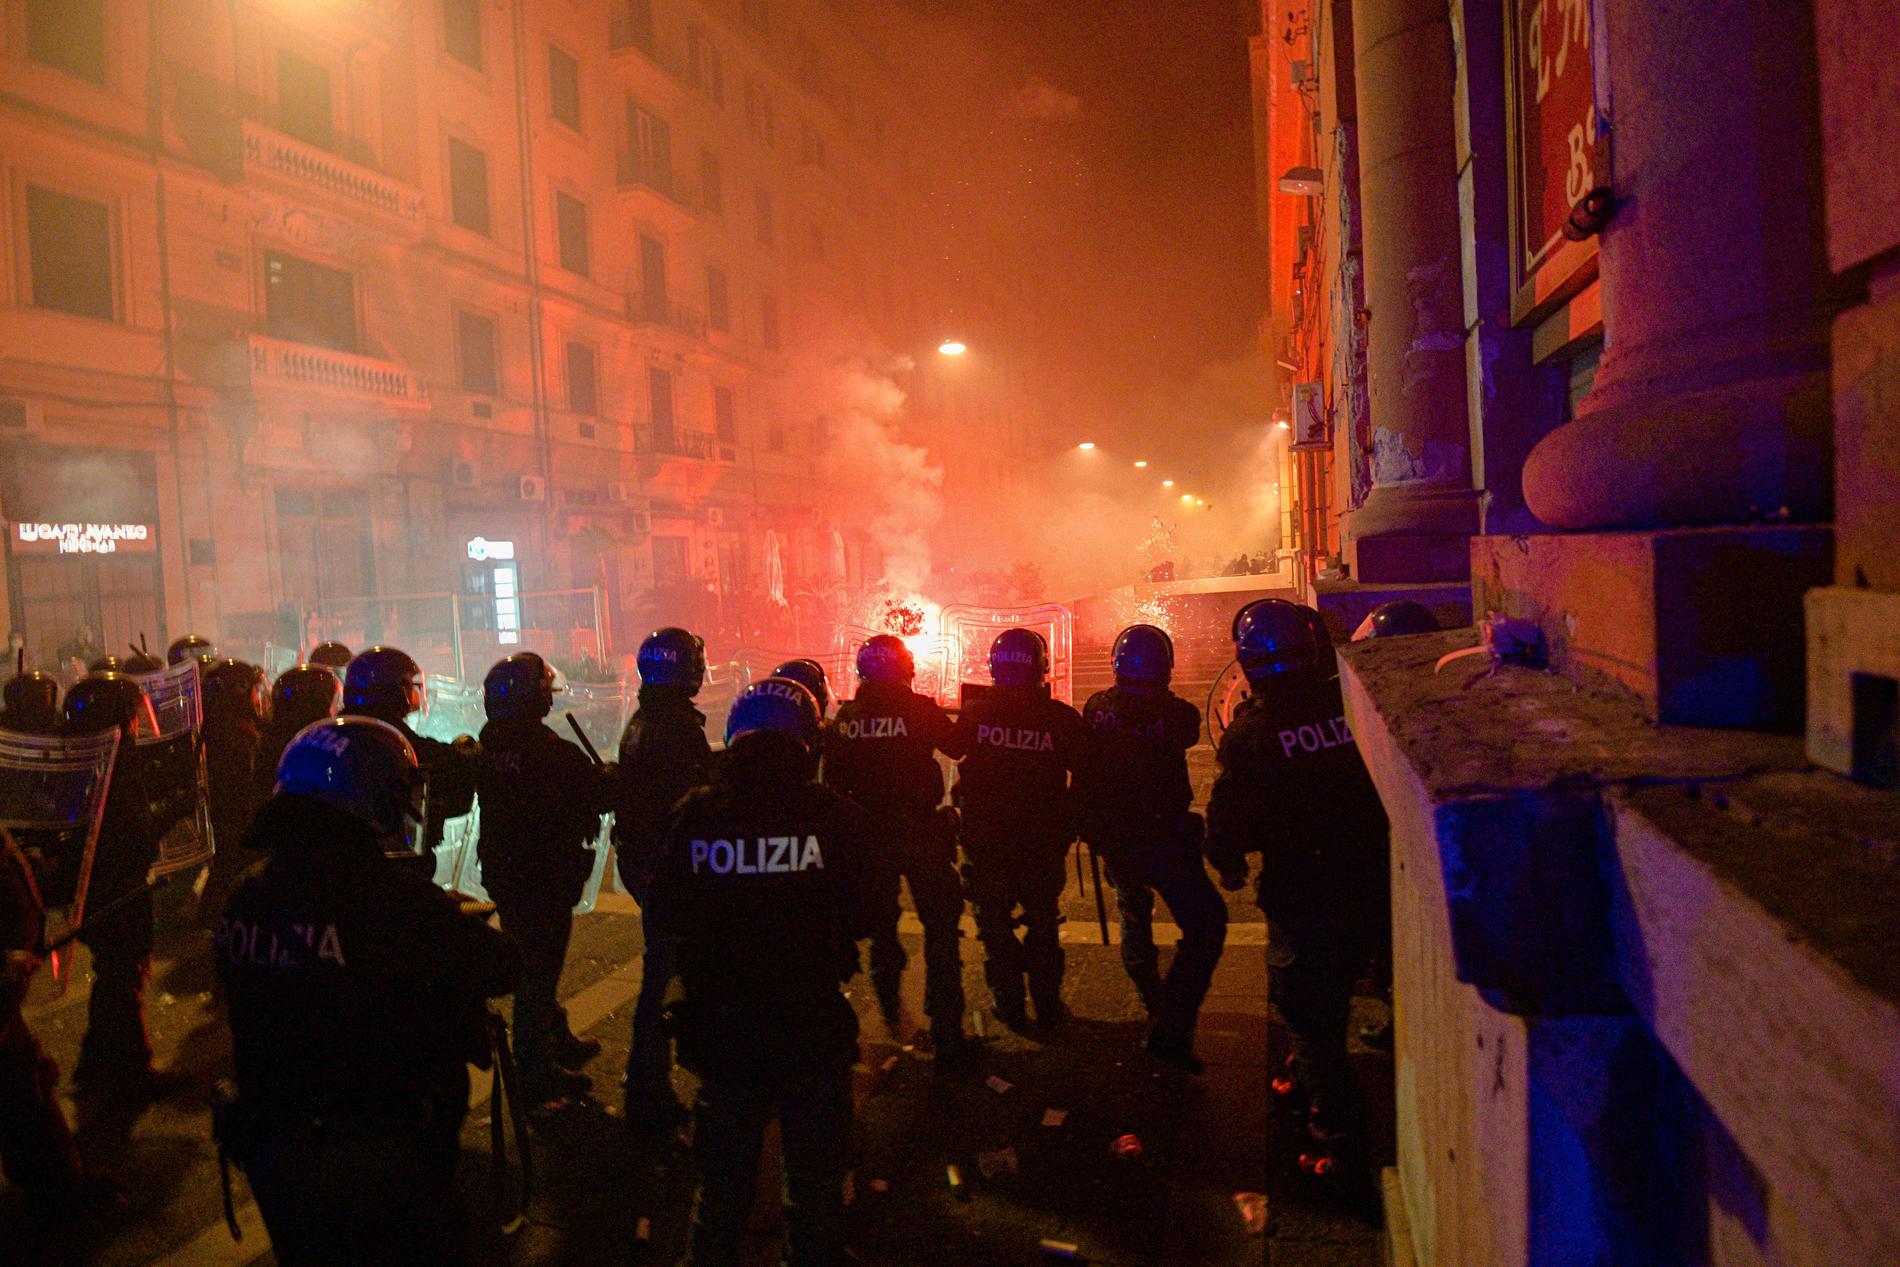 Hundratals demonstranter protesterade i Neapel i fredags mot utegångsförbudet som införts i staden. Arkivbild.